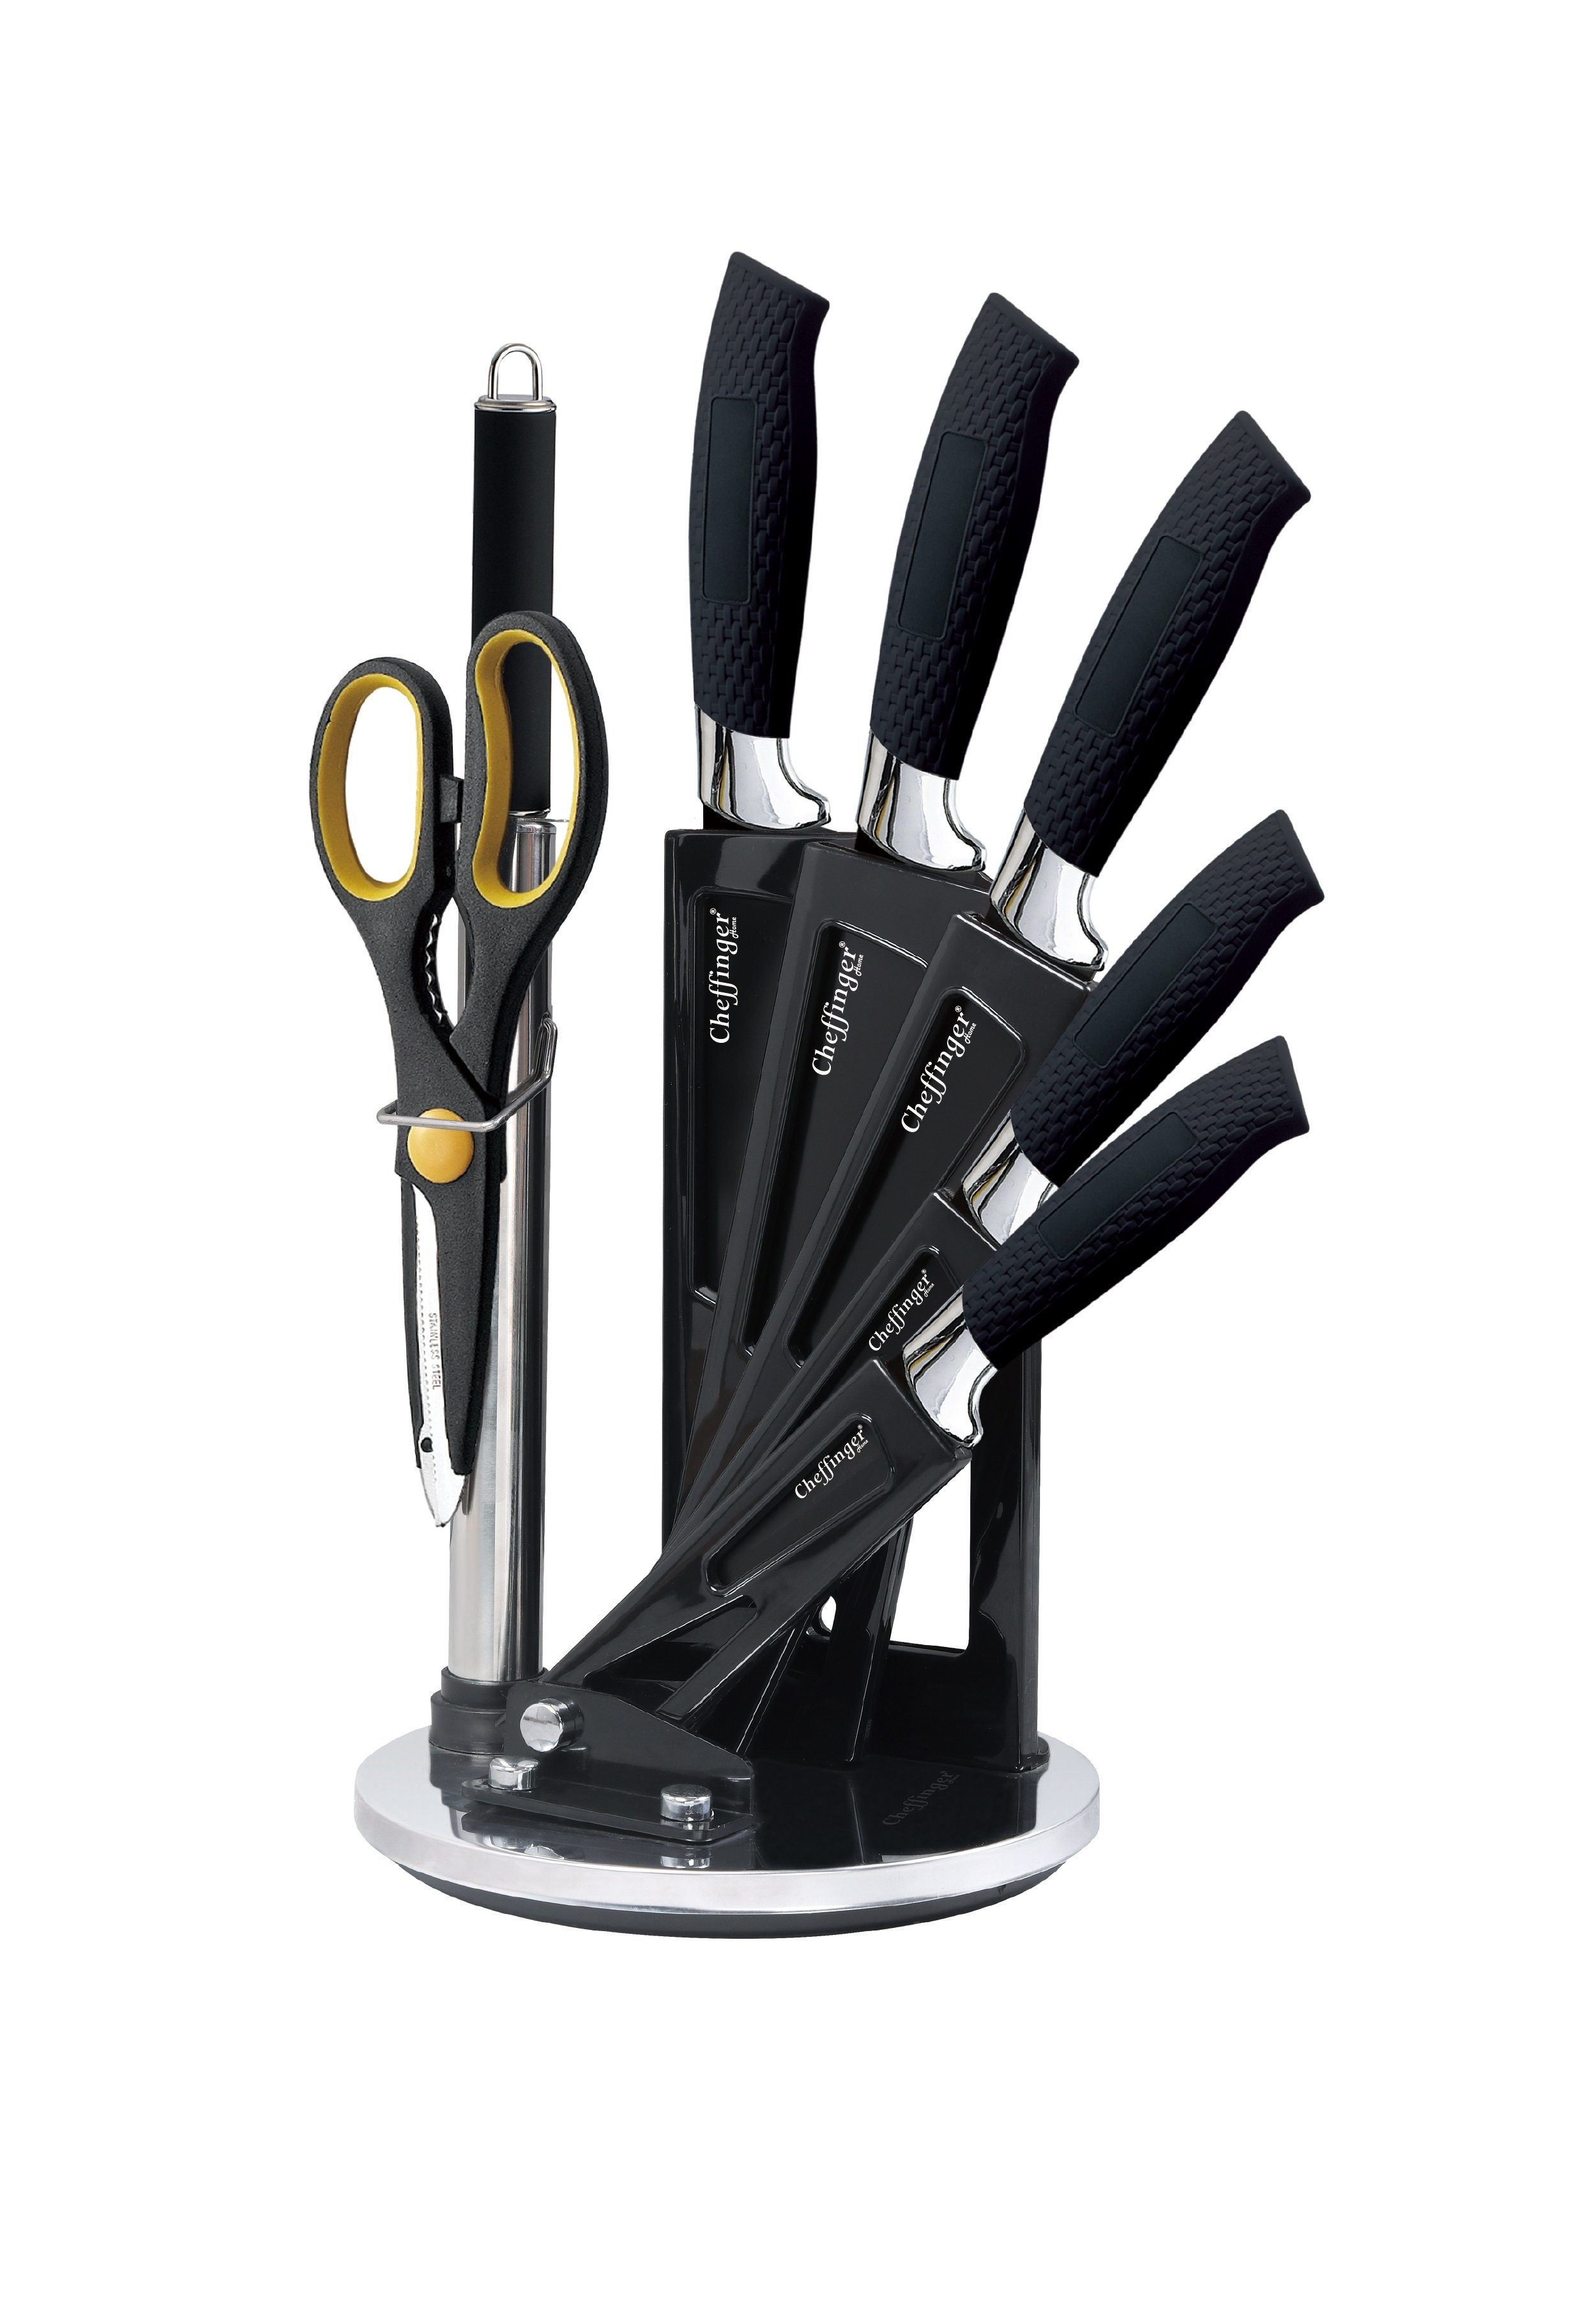 Cheffinger Messer-Set 8 tlg. Messerset Kochmesser Messerständer drehbar Messer Messerblock (8-tlg)